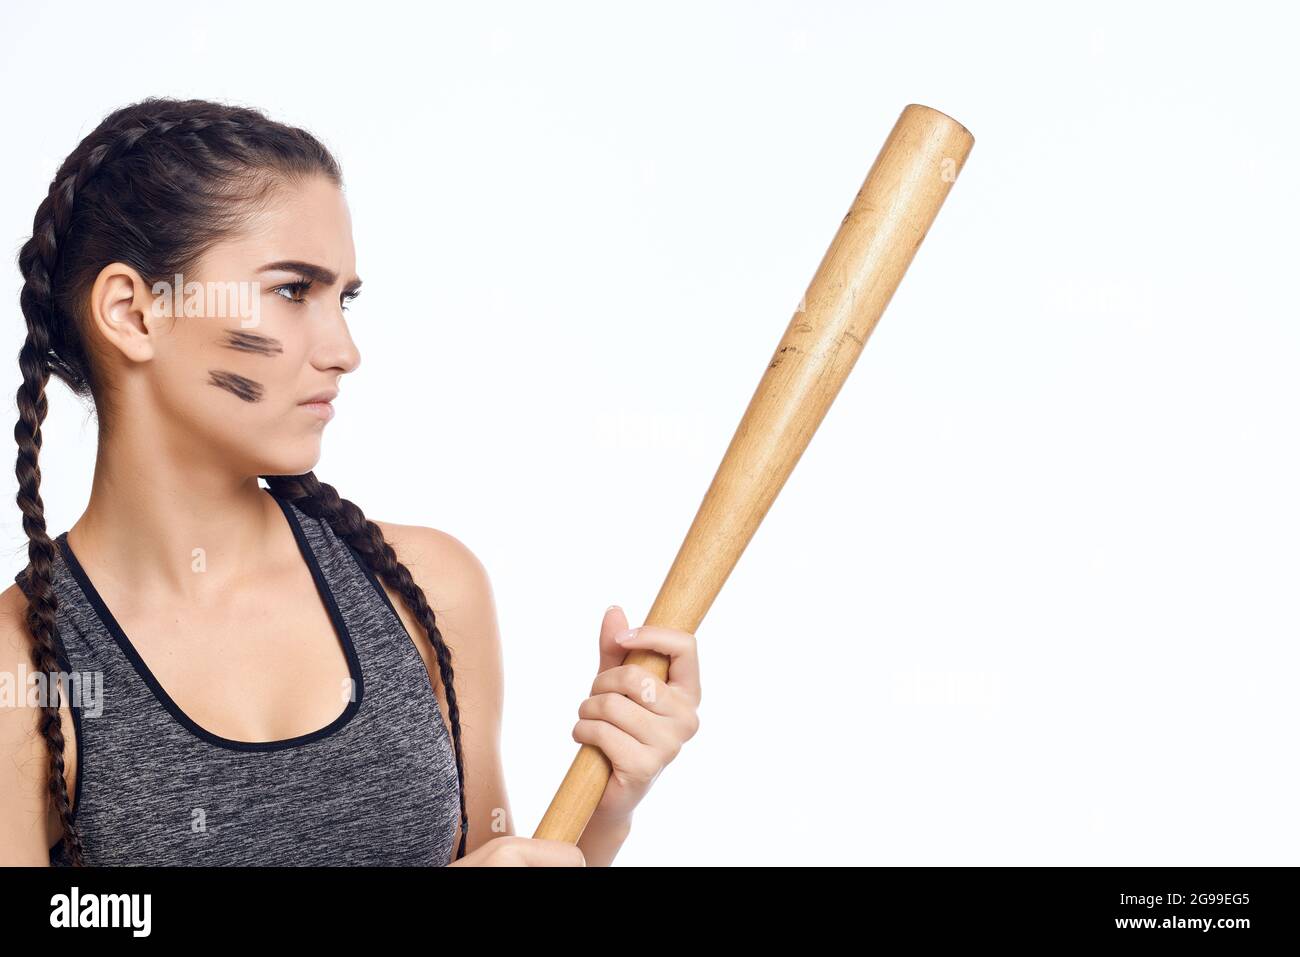 Sportliche Frau mit Baseballschläger Workout Studio Stockfotografie - Alamy